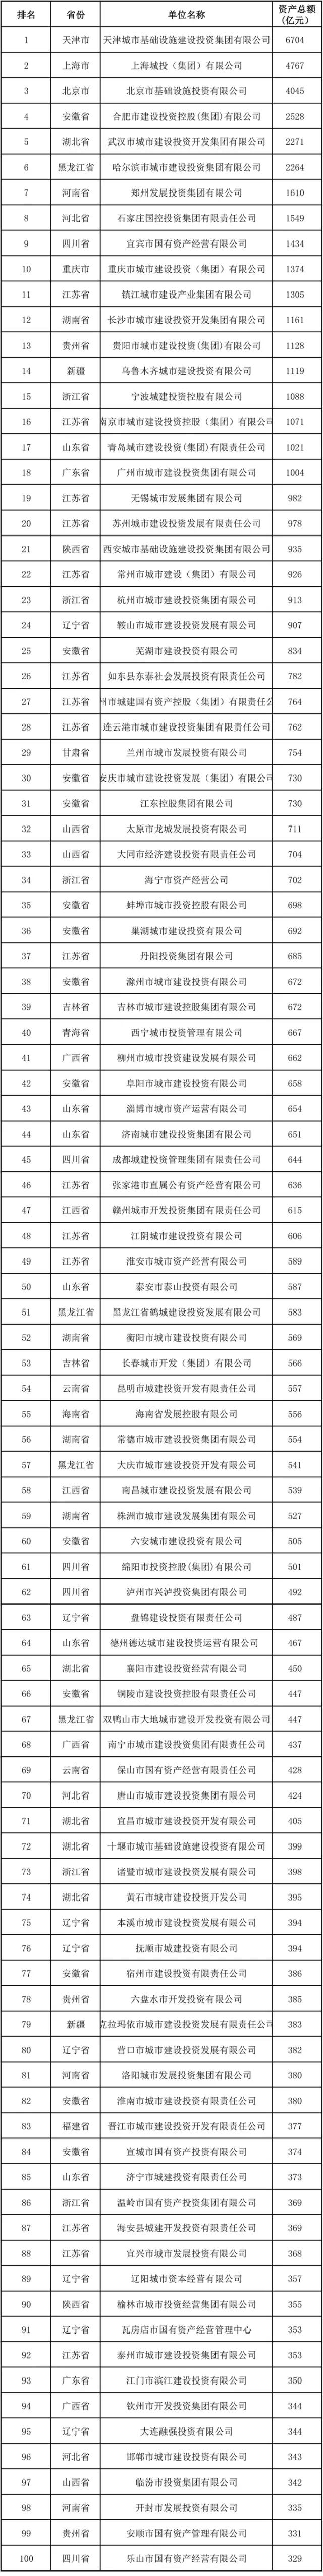 黑龙江企业100强_2018年南京企业100强_南京企业100强